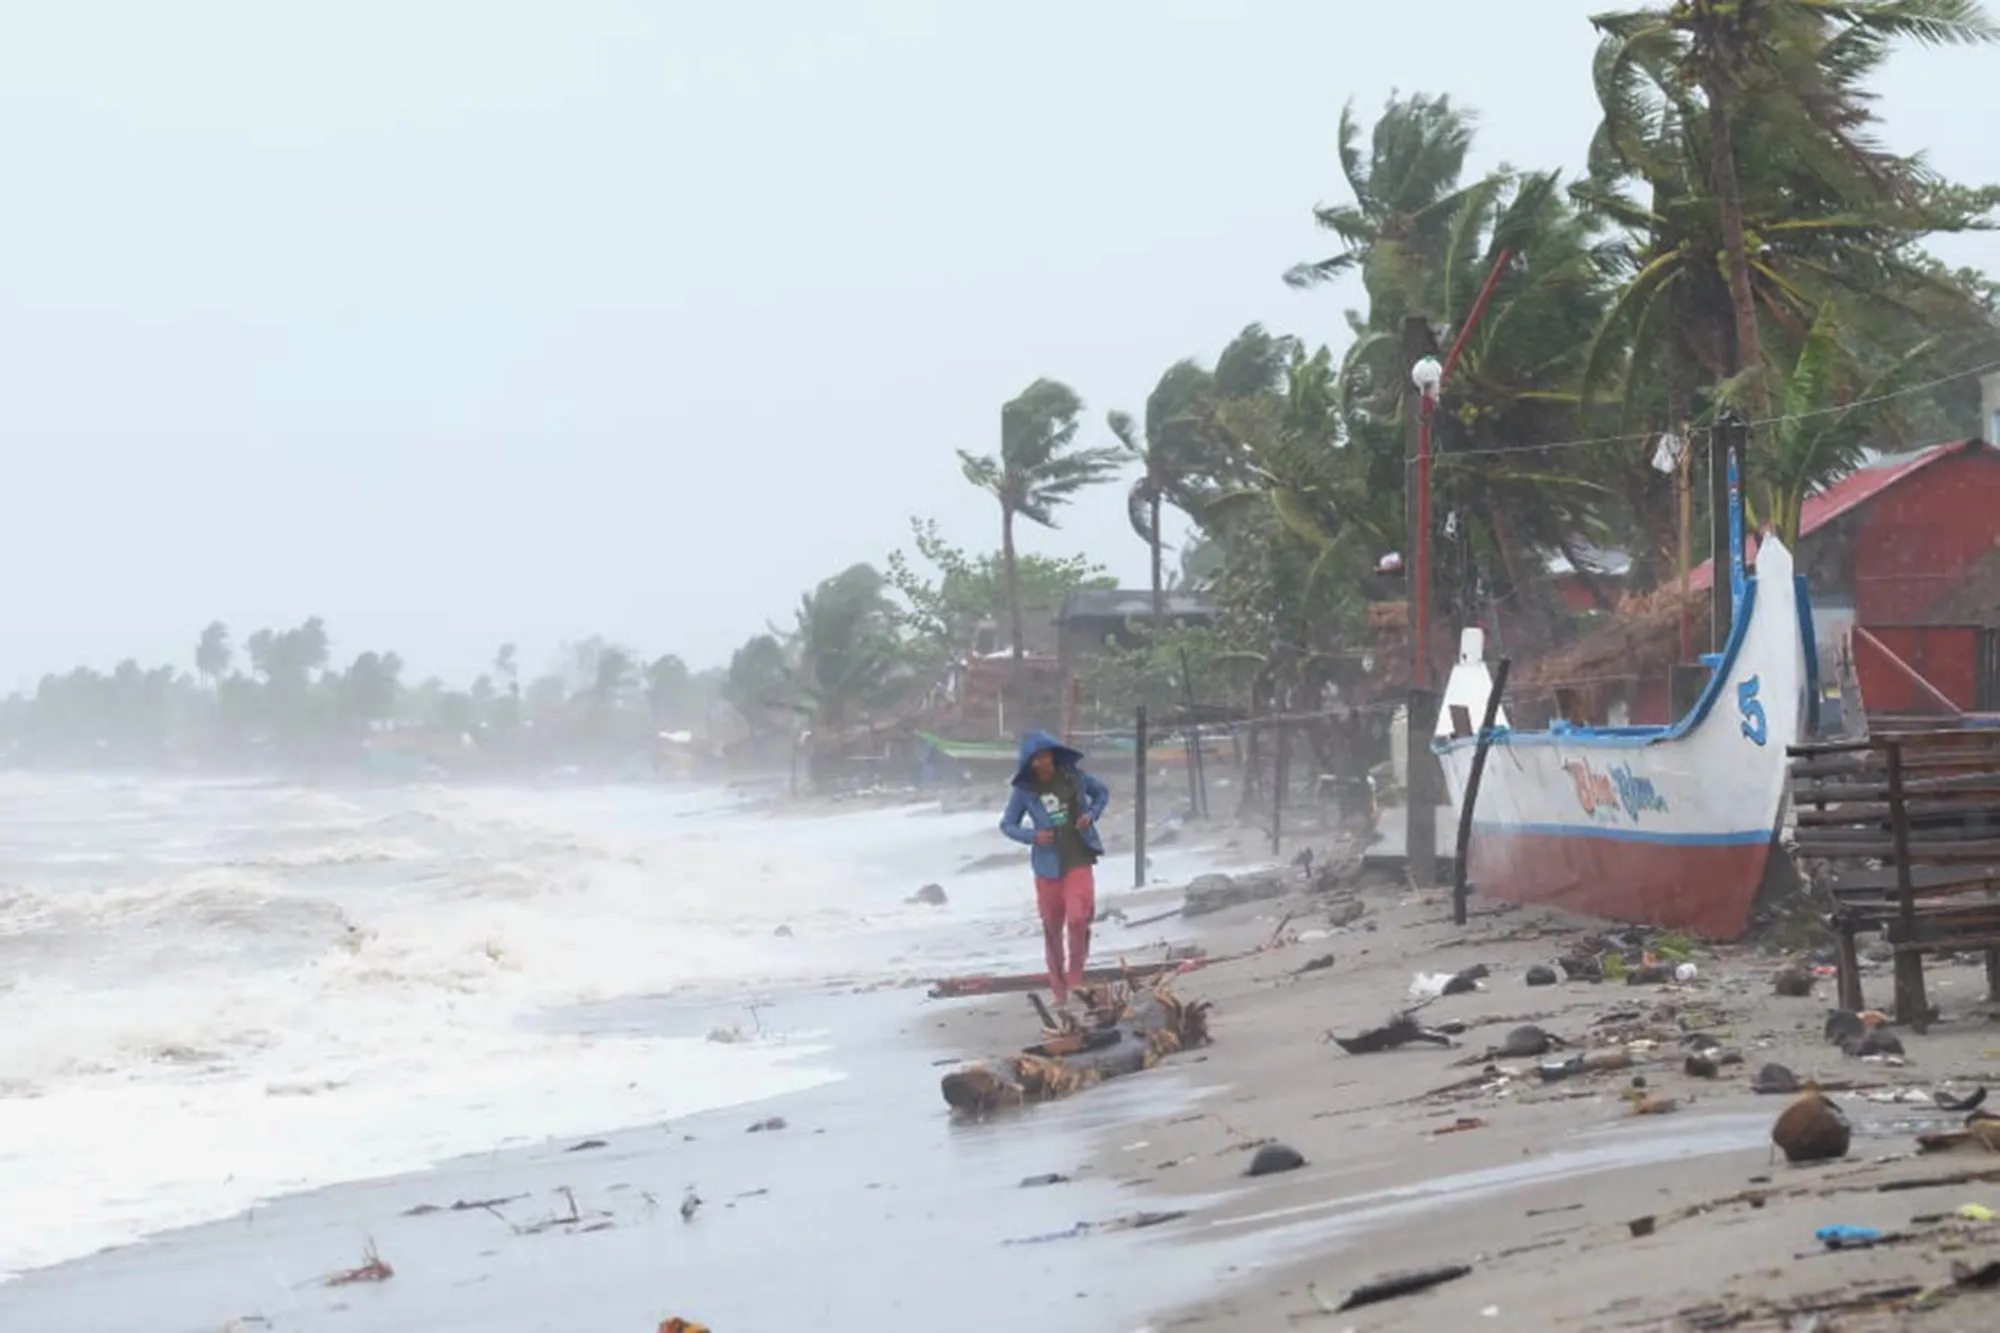 Тайфуном гони. Филиппины 2013 Тайфун. Филиппины ЦУНАМИ. Тайфун Хайян 2013. Филиппины ураган.